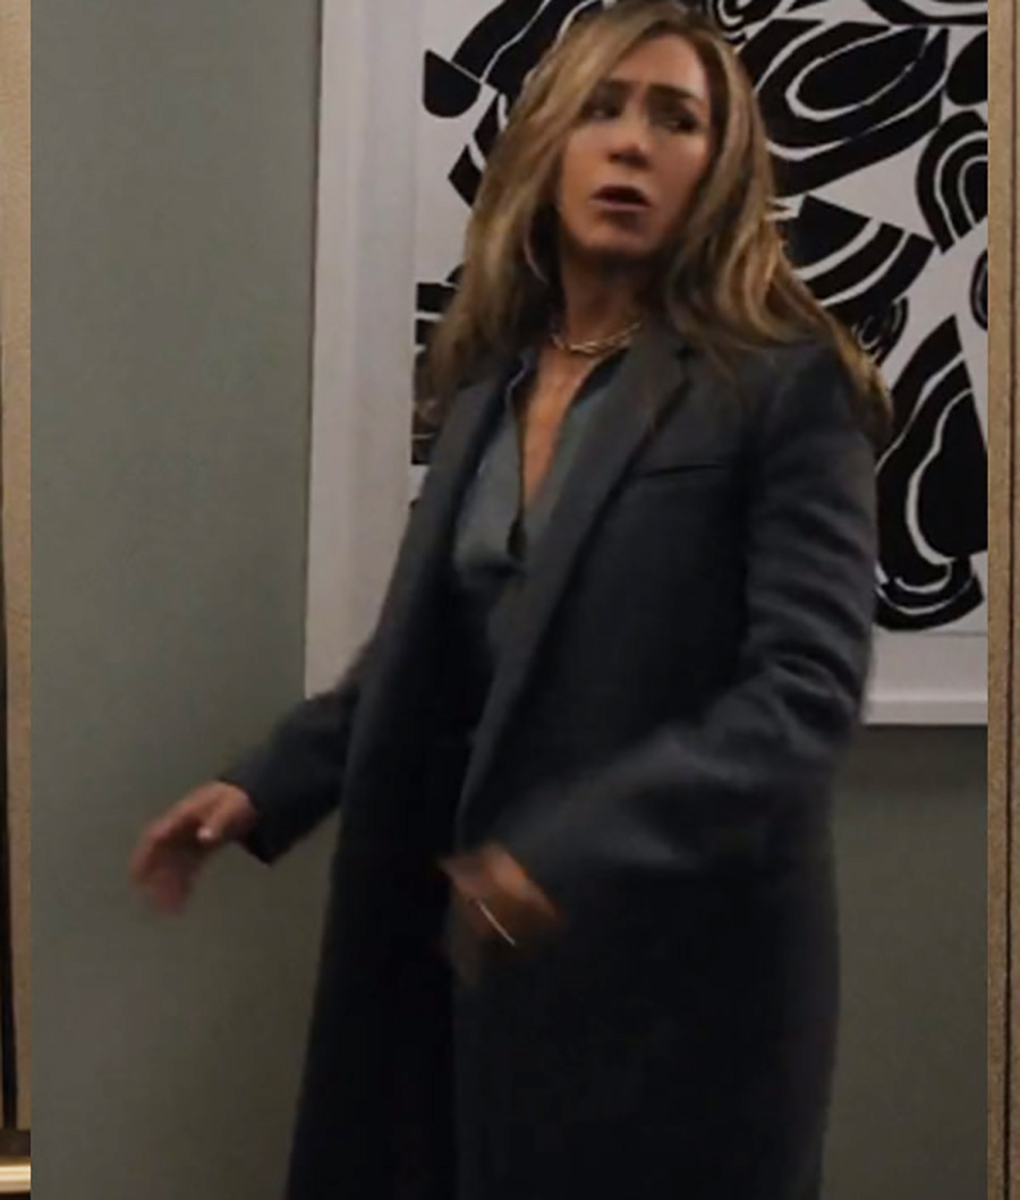 The Morning Show Jennifer Aniston Grey Coat